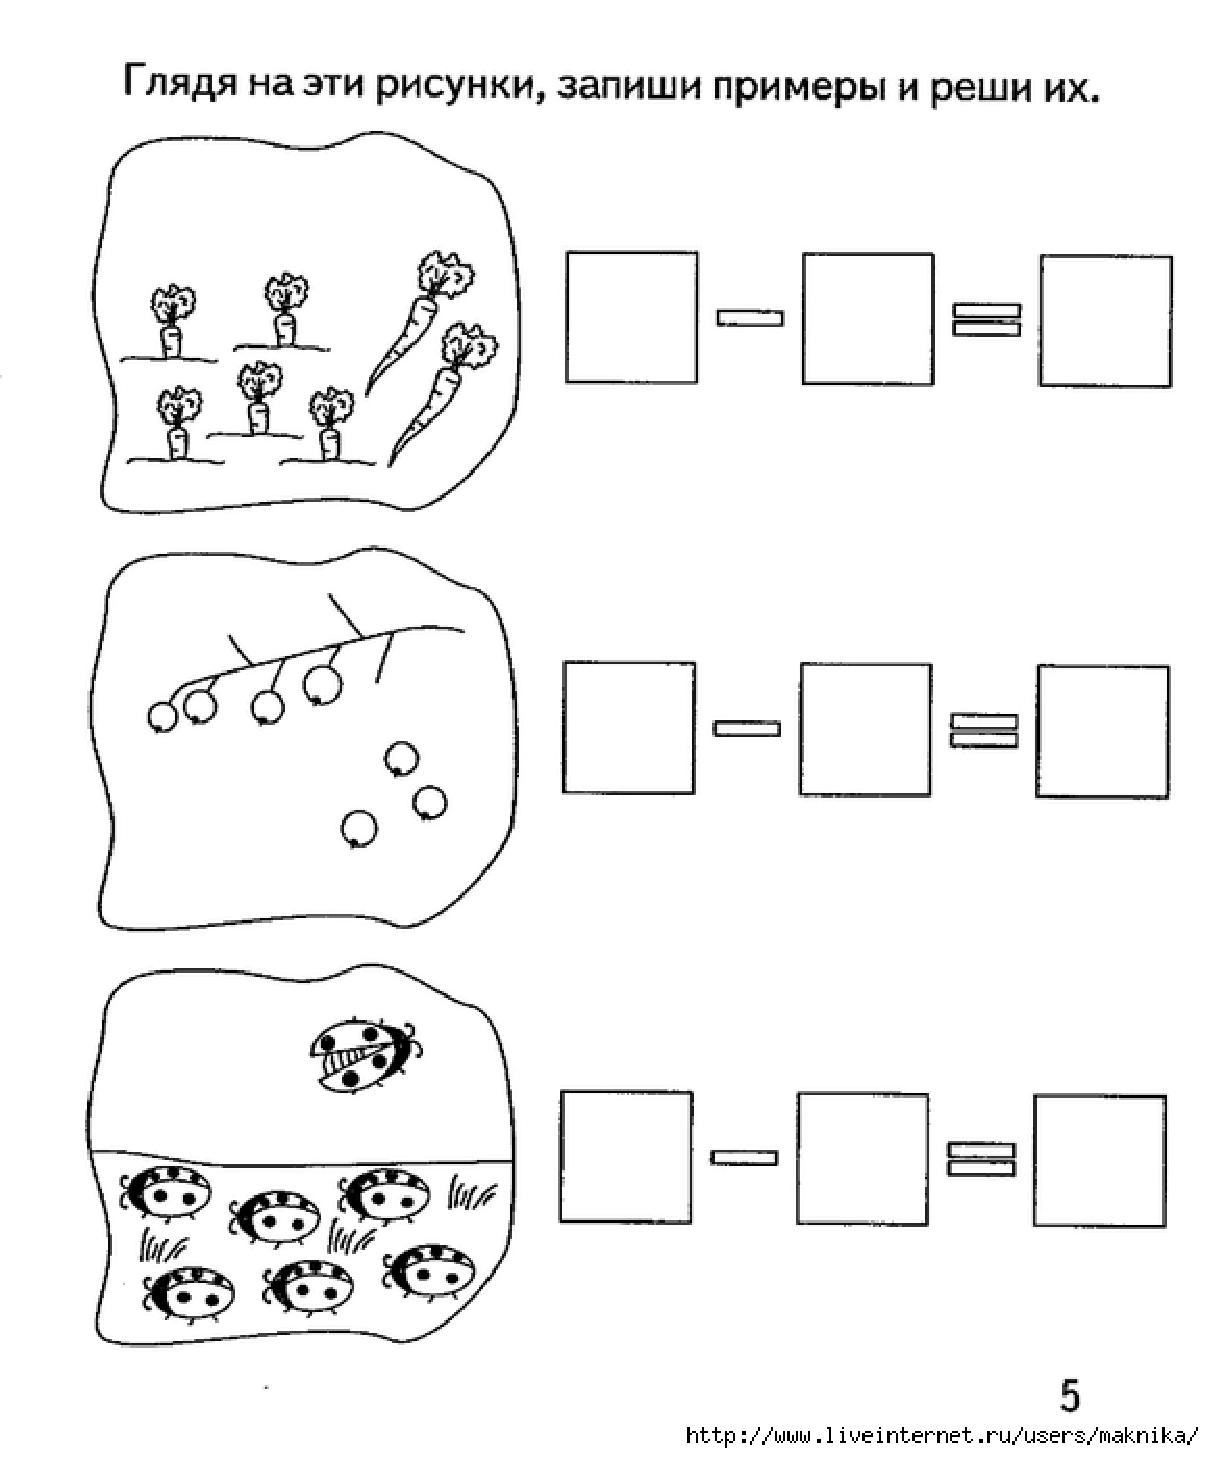 Примеры для старшей группы. Задания для дошкольников задачи на вычитание. Задачи на вычитание для дошкольников в картинках. Задачи для дошкольников по математике на сложение. Задачи для детей на сложение и вычитание.